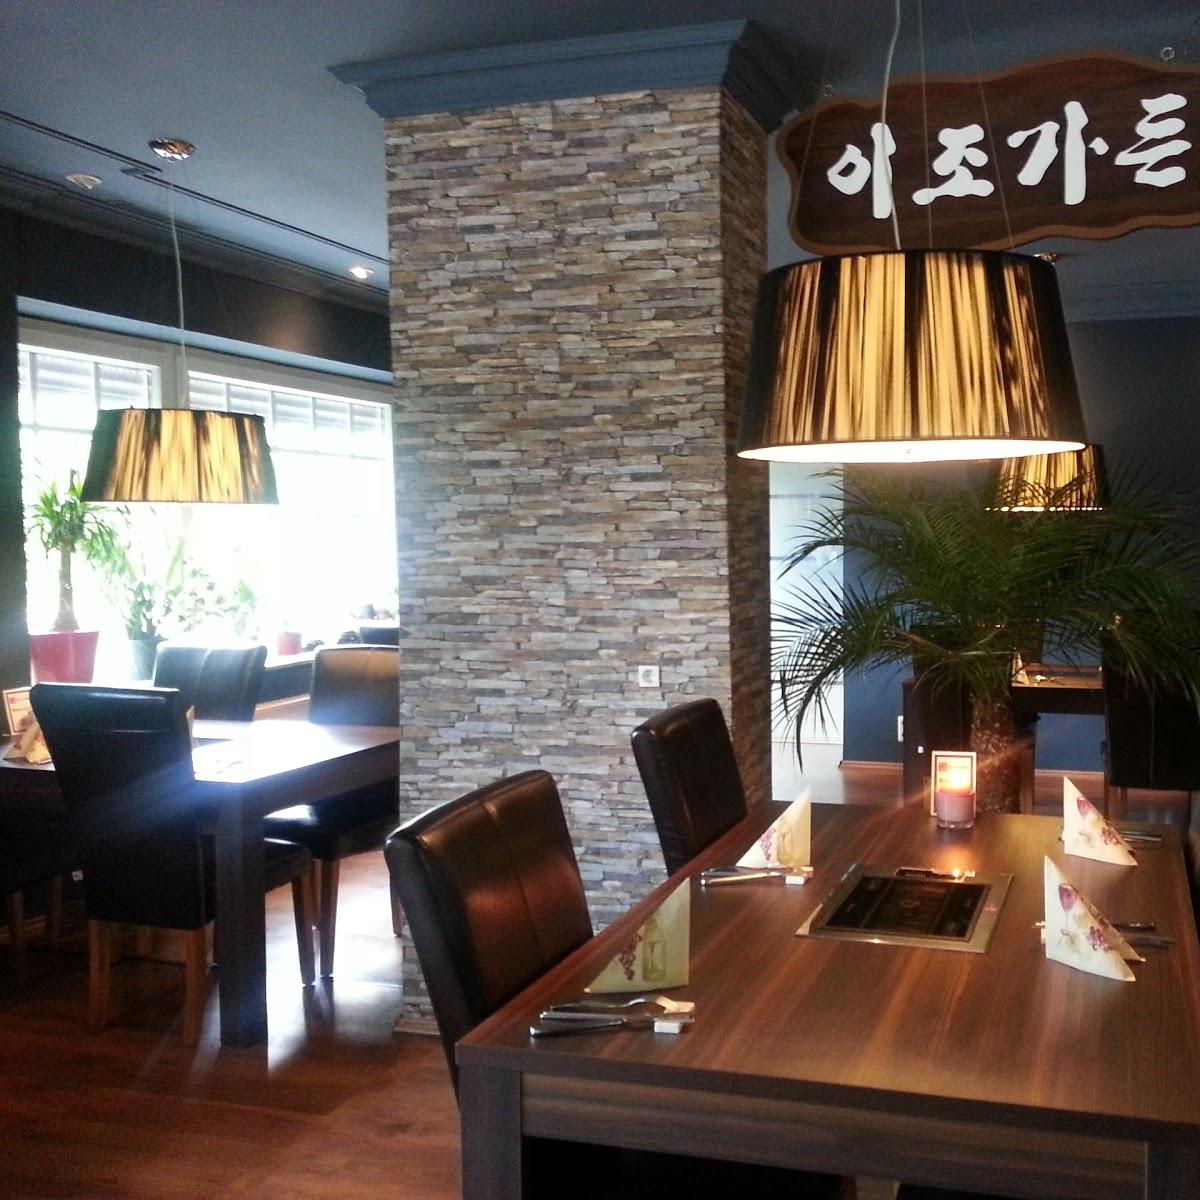 Restaurant "Korea BBQ" in Ruppichteroth